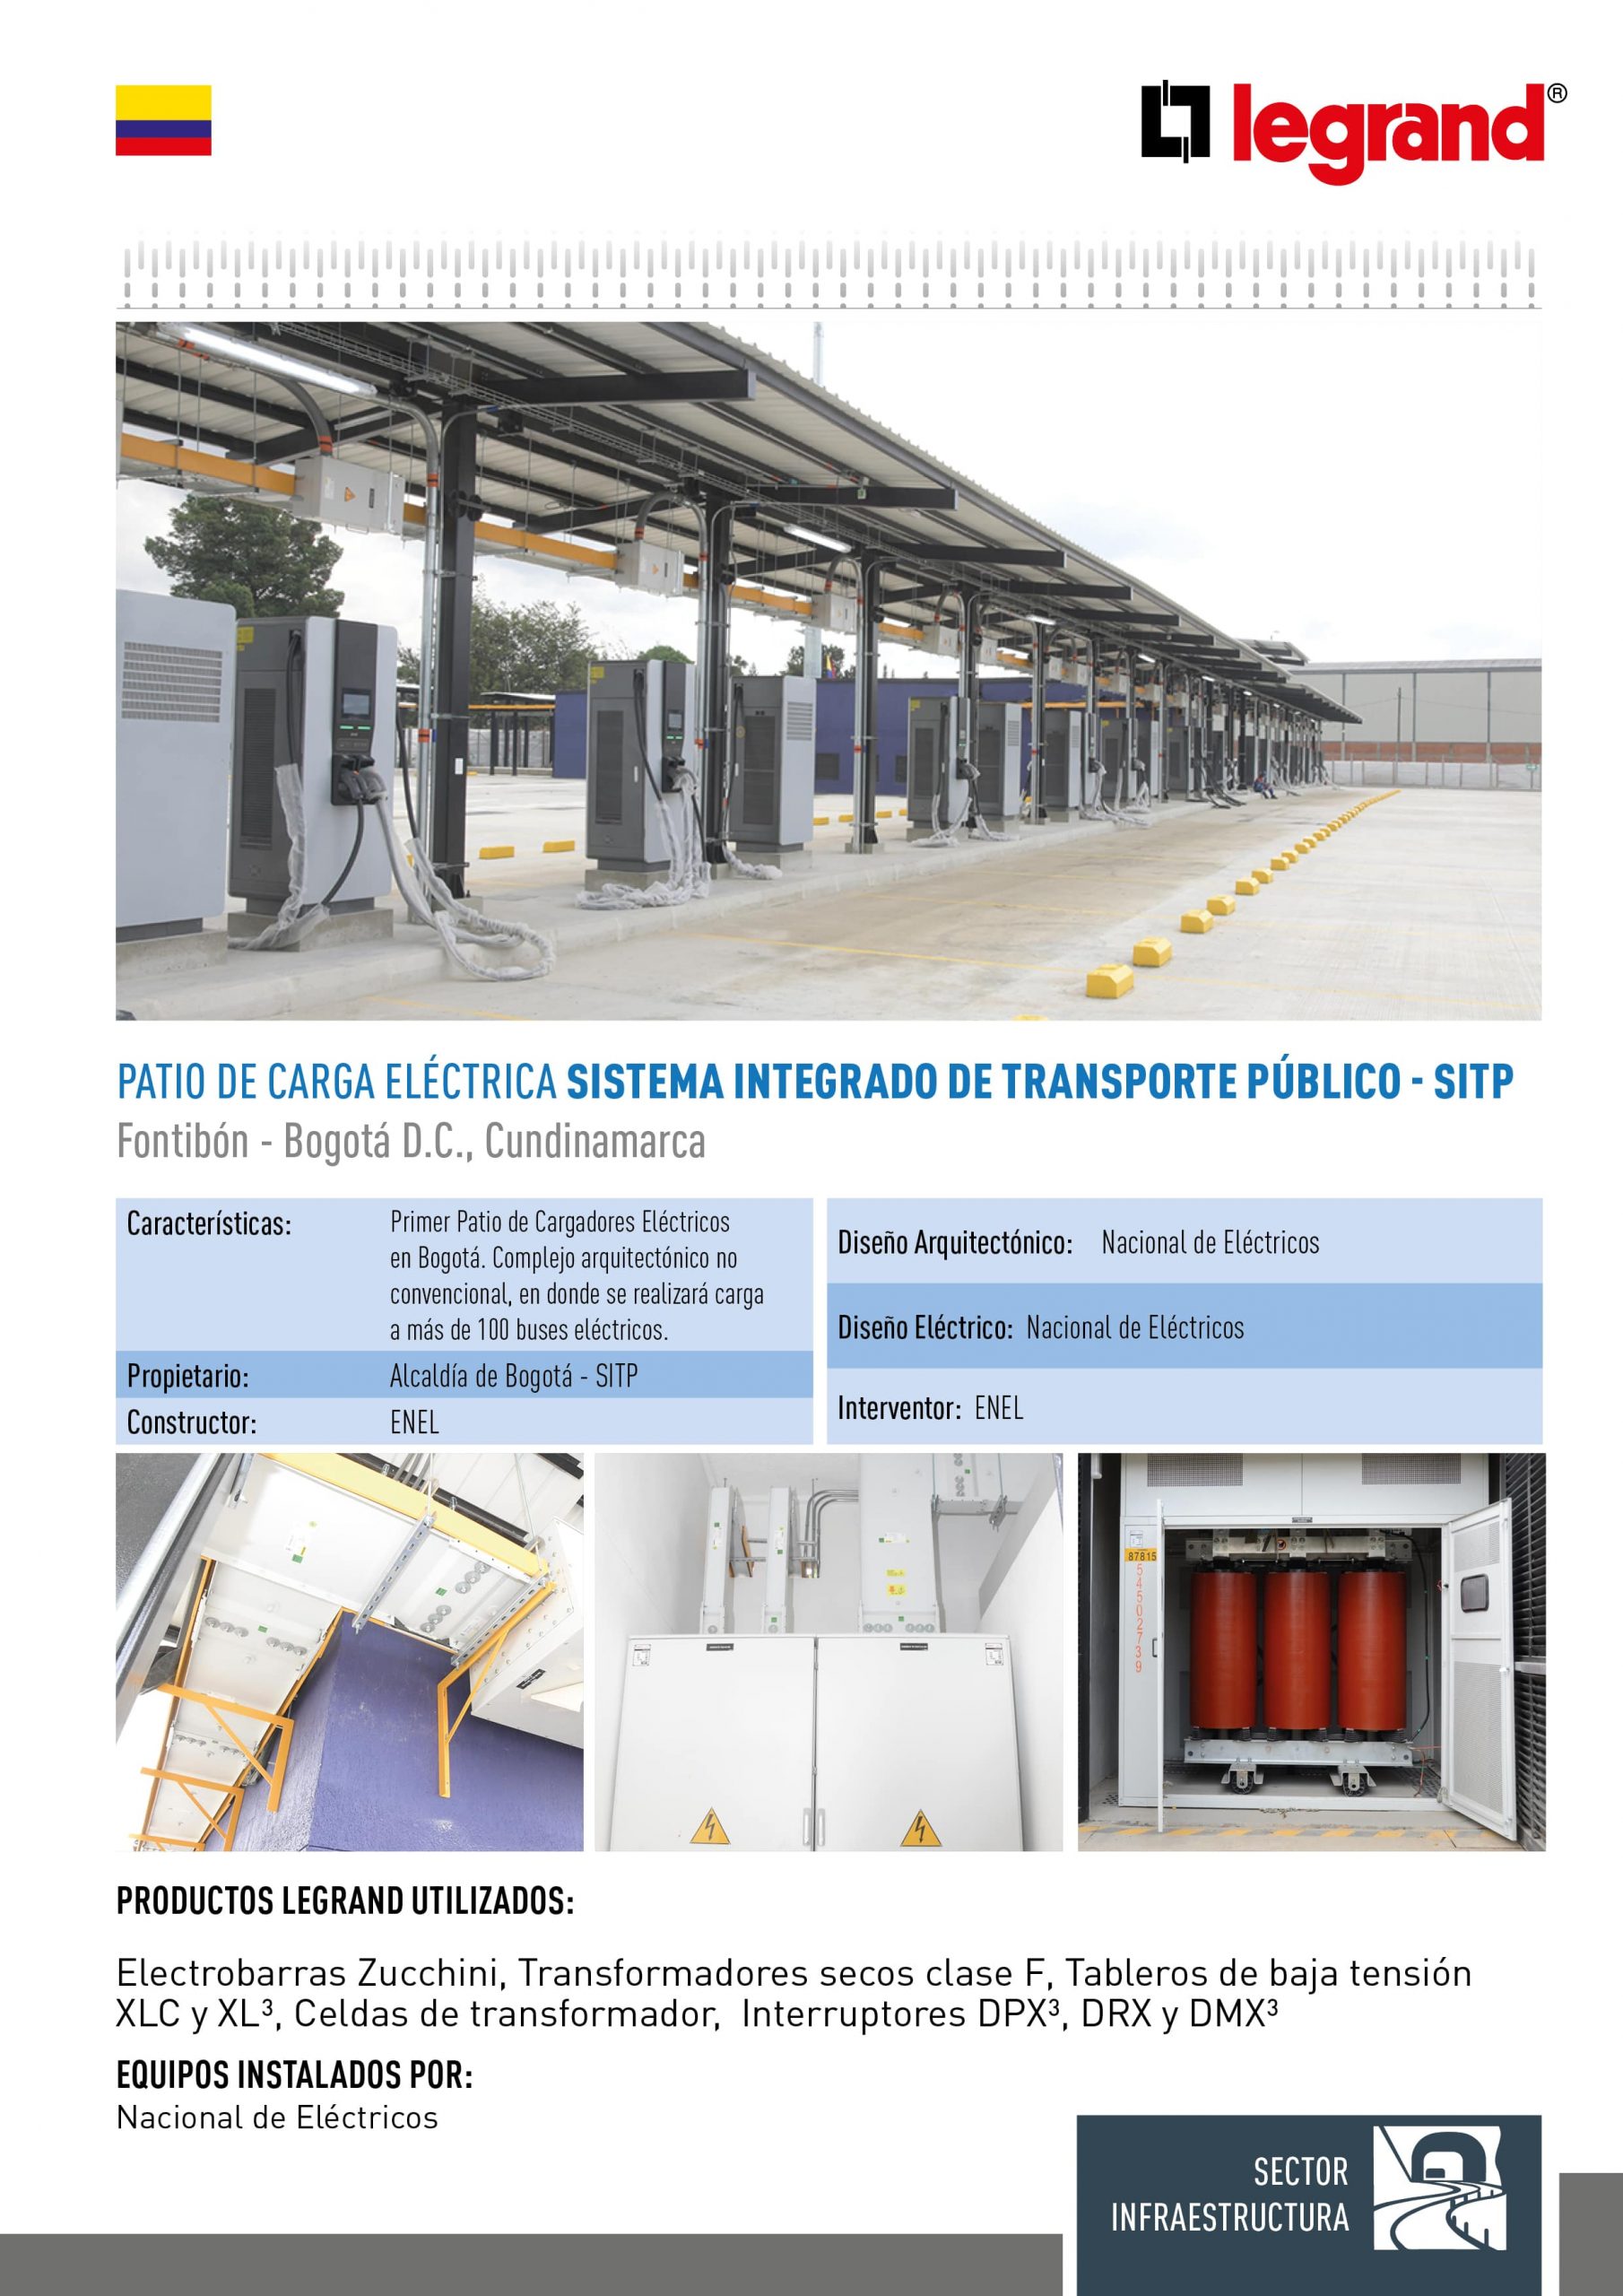 Patio de Carga Eléctrica Sistema Intregrado de Transporte Público – SITP (Fontibón)